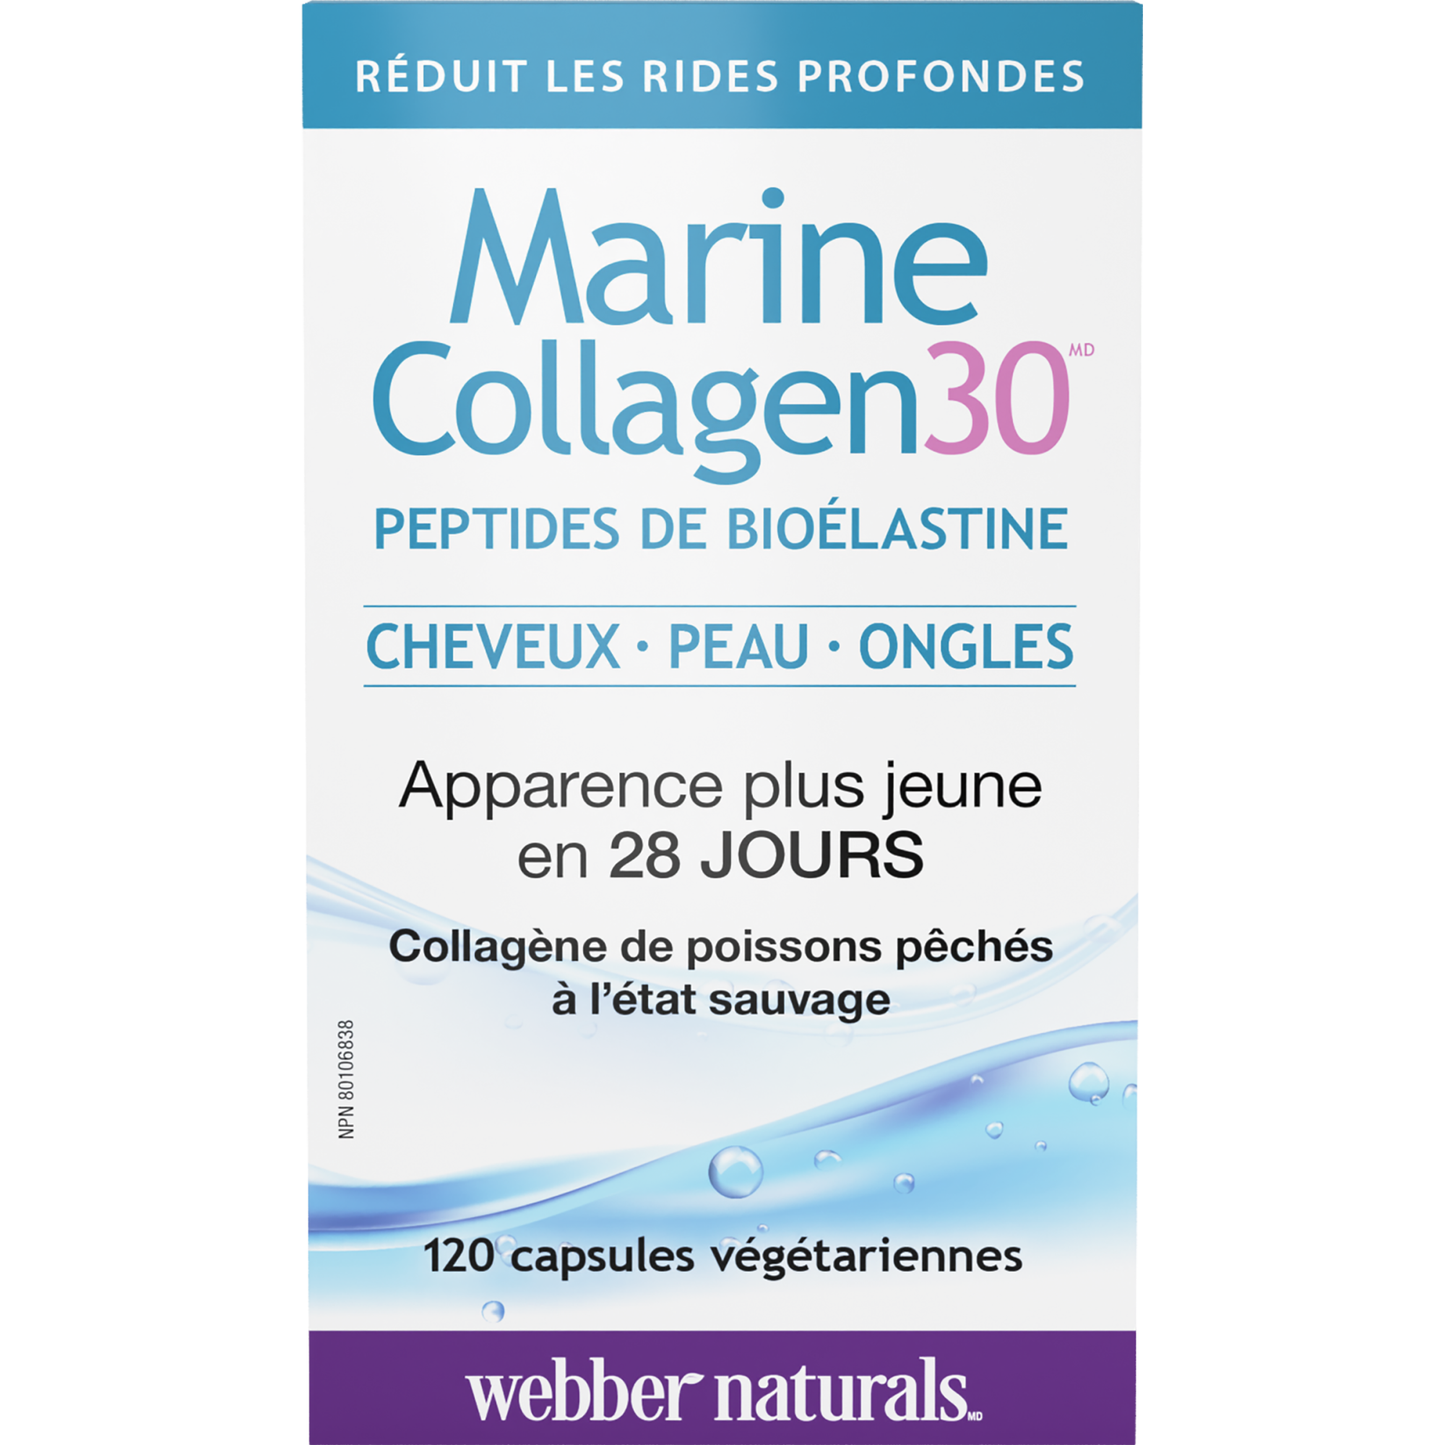 Marine Collagen30(MD) peptides de bioélastine for Webber Naturals|v|hi-res|WN3657